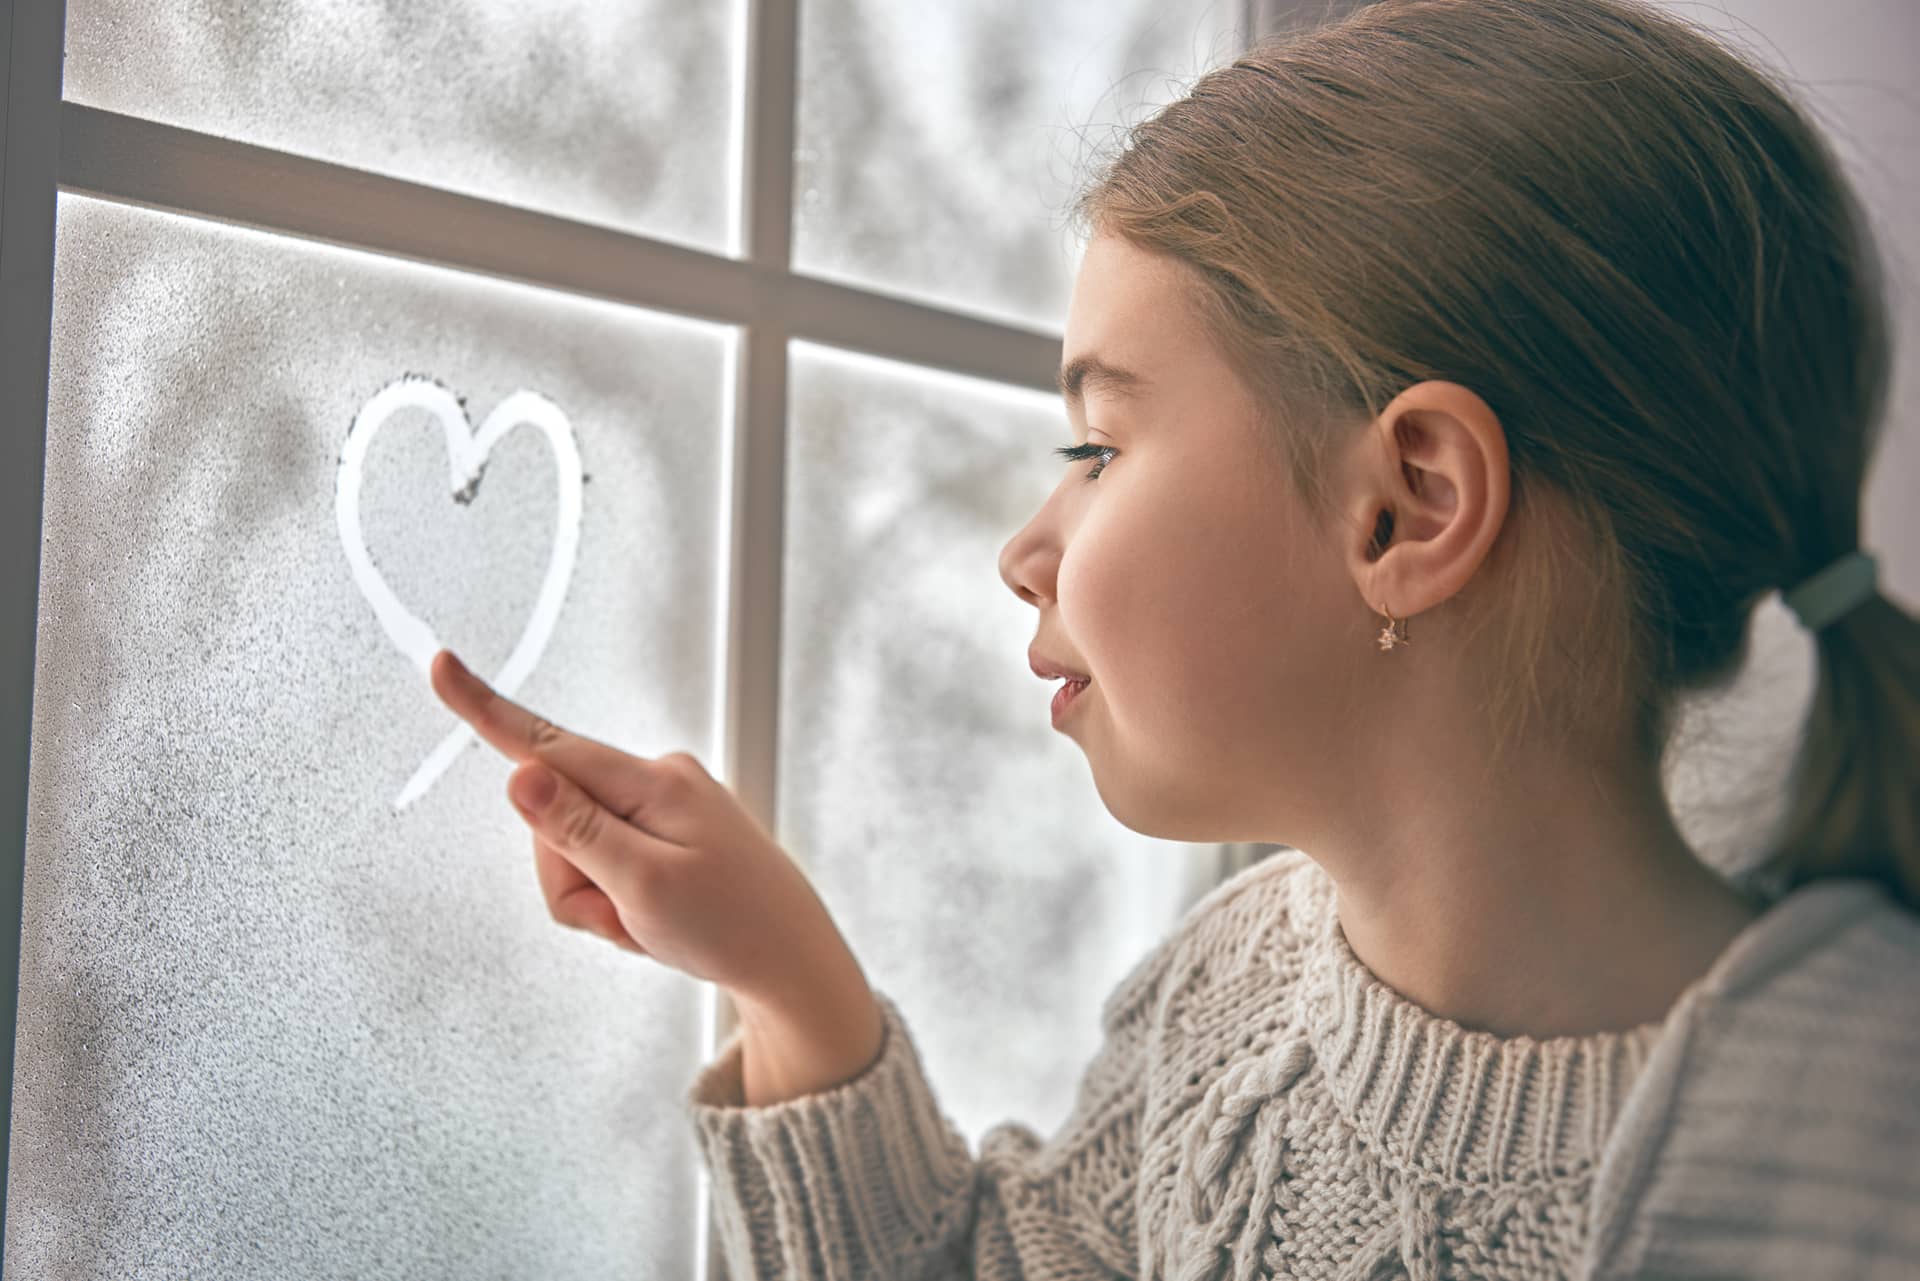 Sitting by window drawing heart frozen glass kid enjoys winter